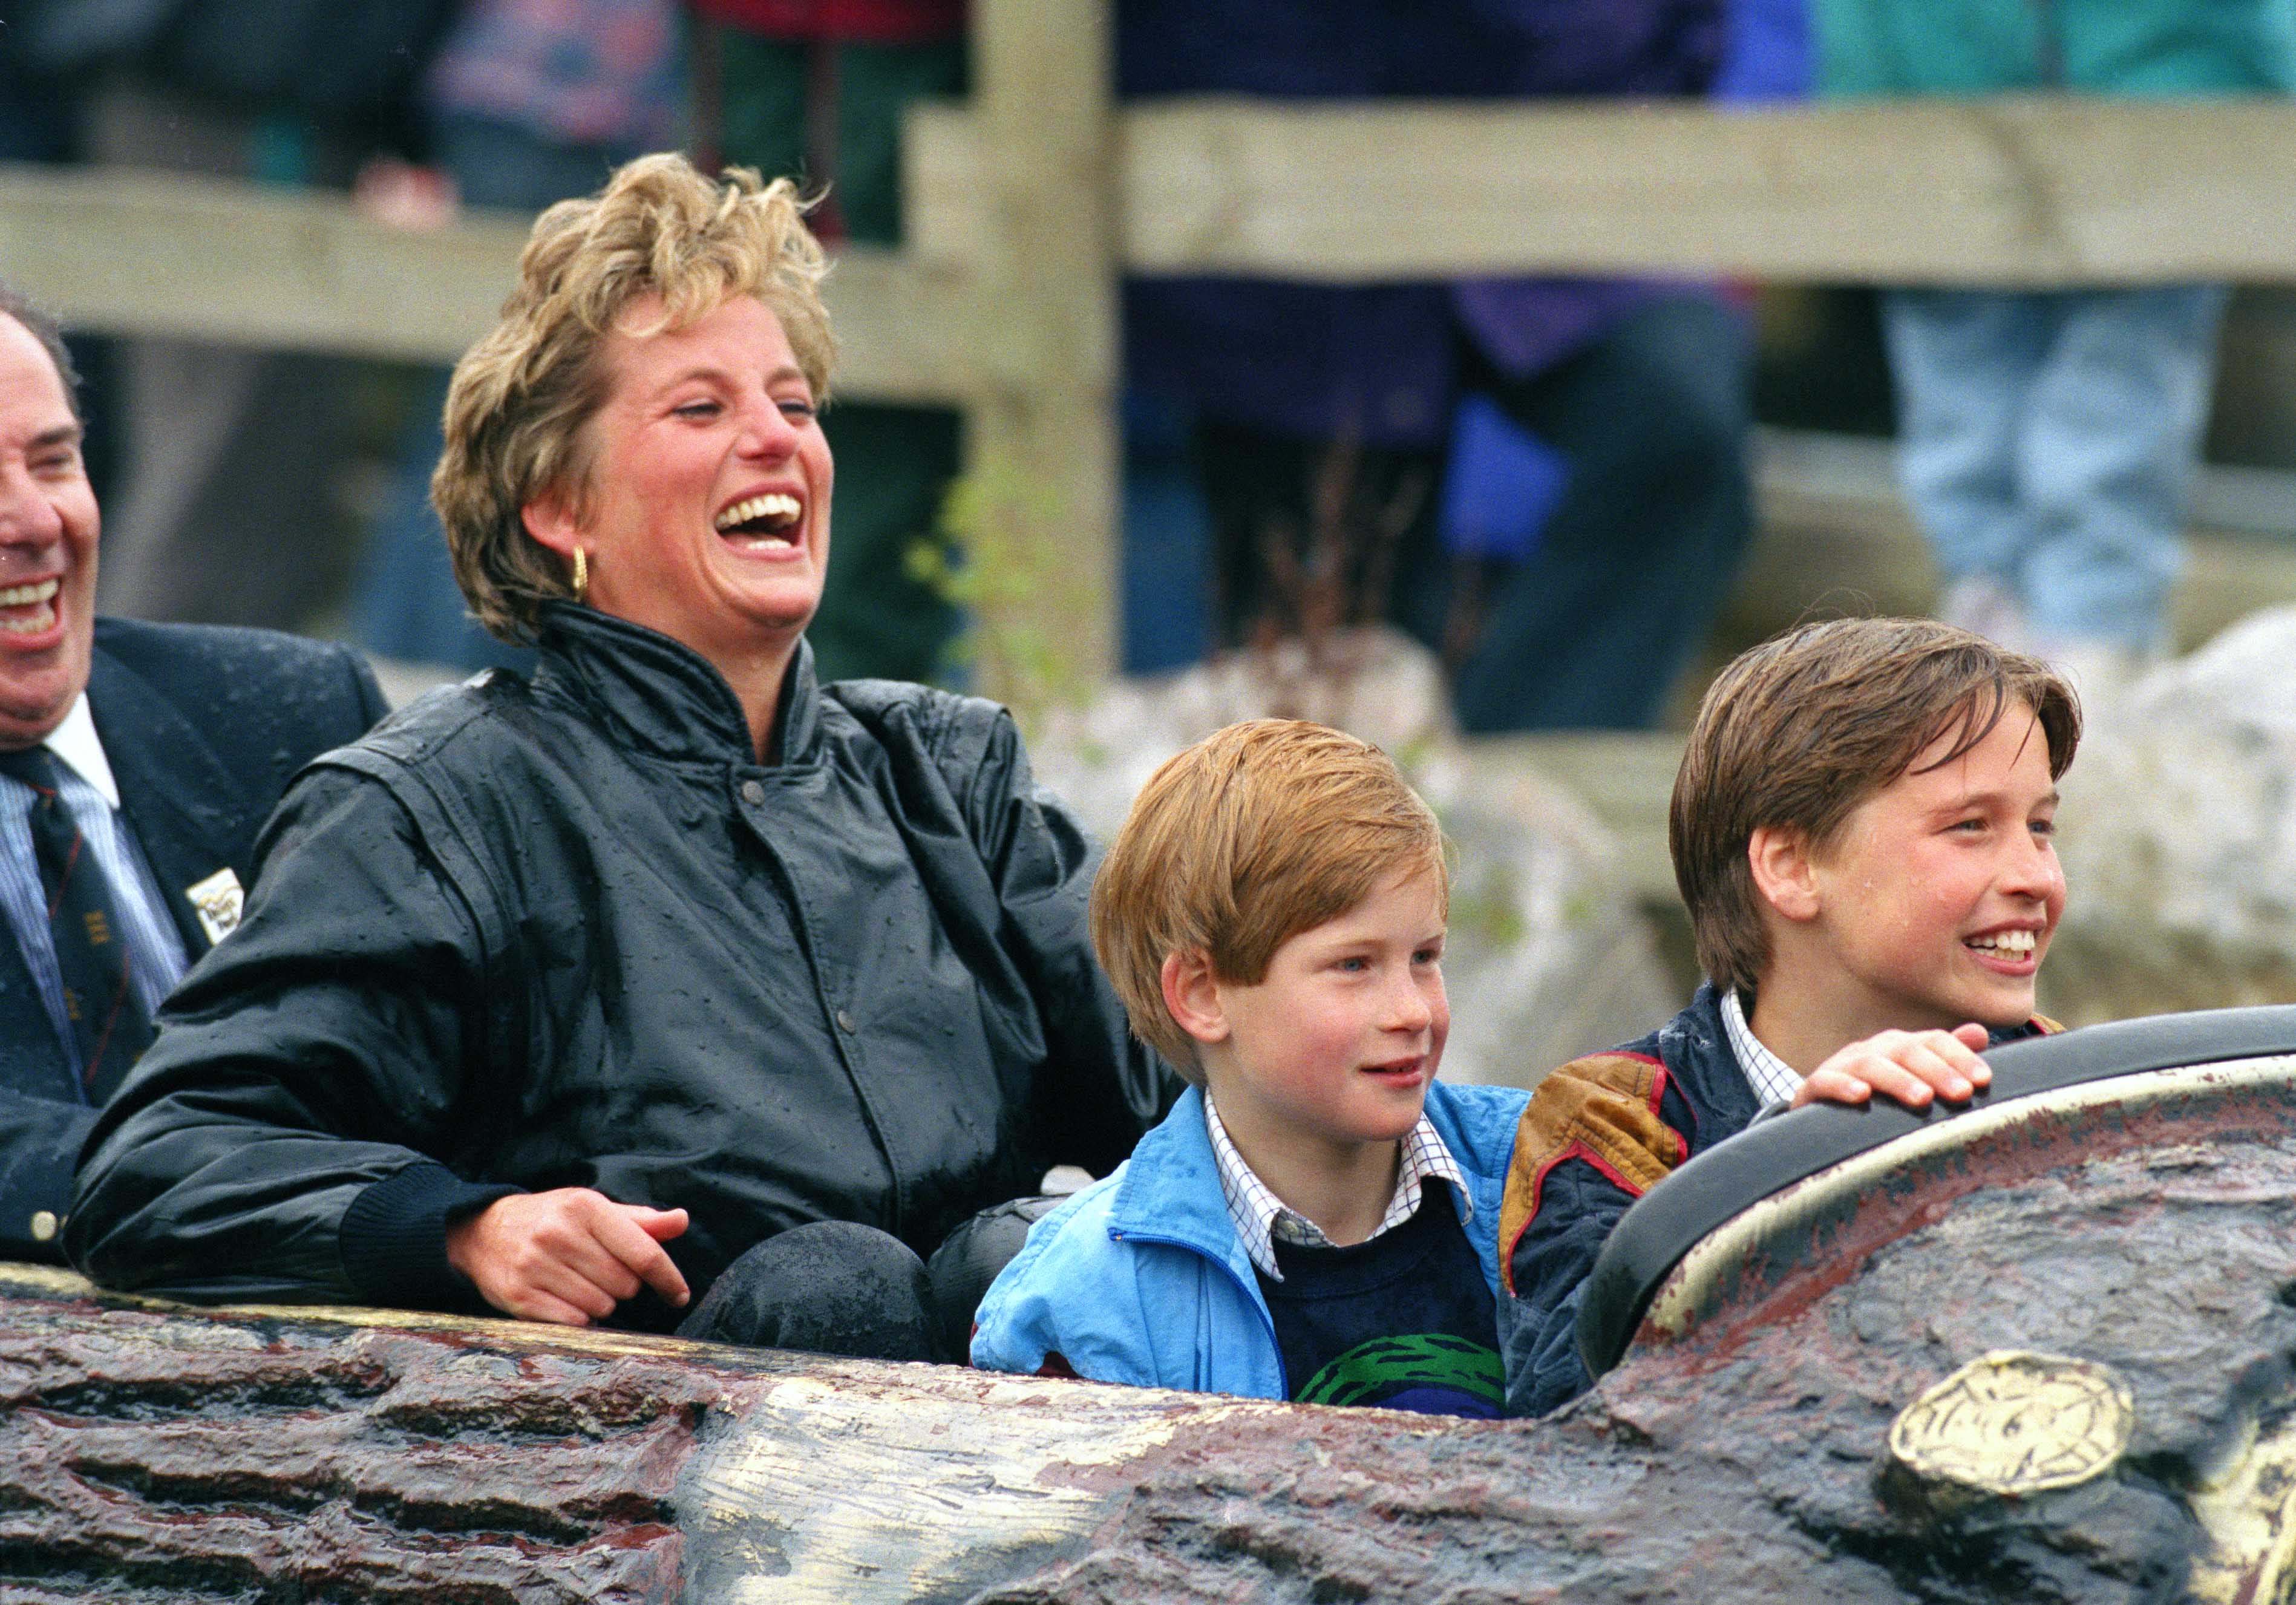 La princesa Diana, el príncipe William y el príncipe Harry en un parque de diversiones en Inglaterra en 1993 | Foto: Getty Images